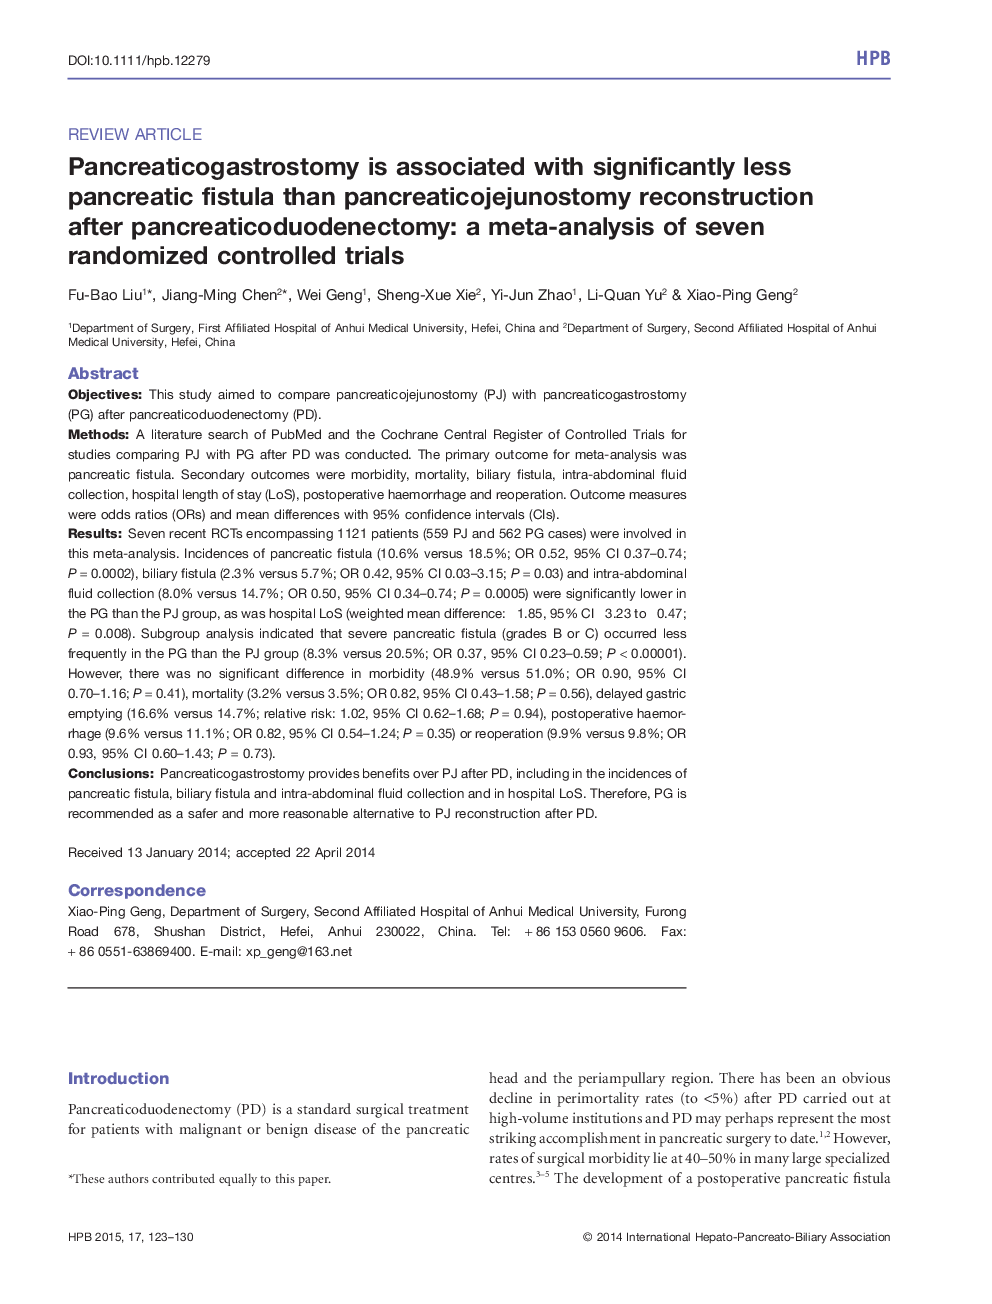 پانکرایتاکتواستومی با فیستول پانکراس قابل ملاحظه کمتری نسبت به بازسازی پانکرایتائیونونوستومی پس از پانکراس دیویدونکتومی همراه است: تحلیل متاثر از هفت کارآزمایی تصادفی کنترل شده 